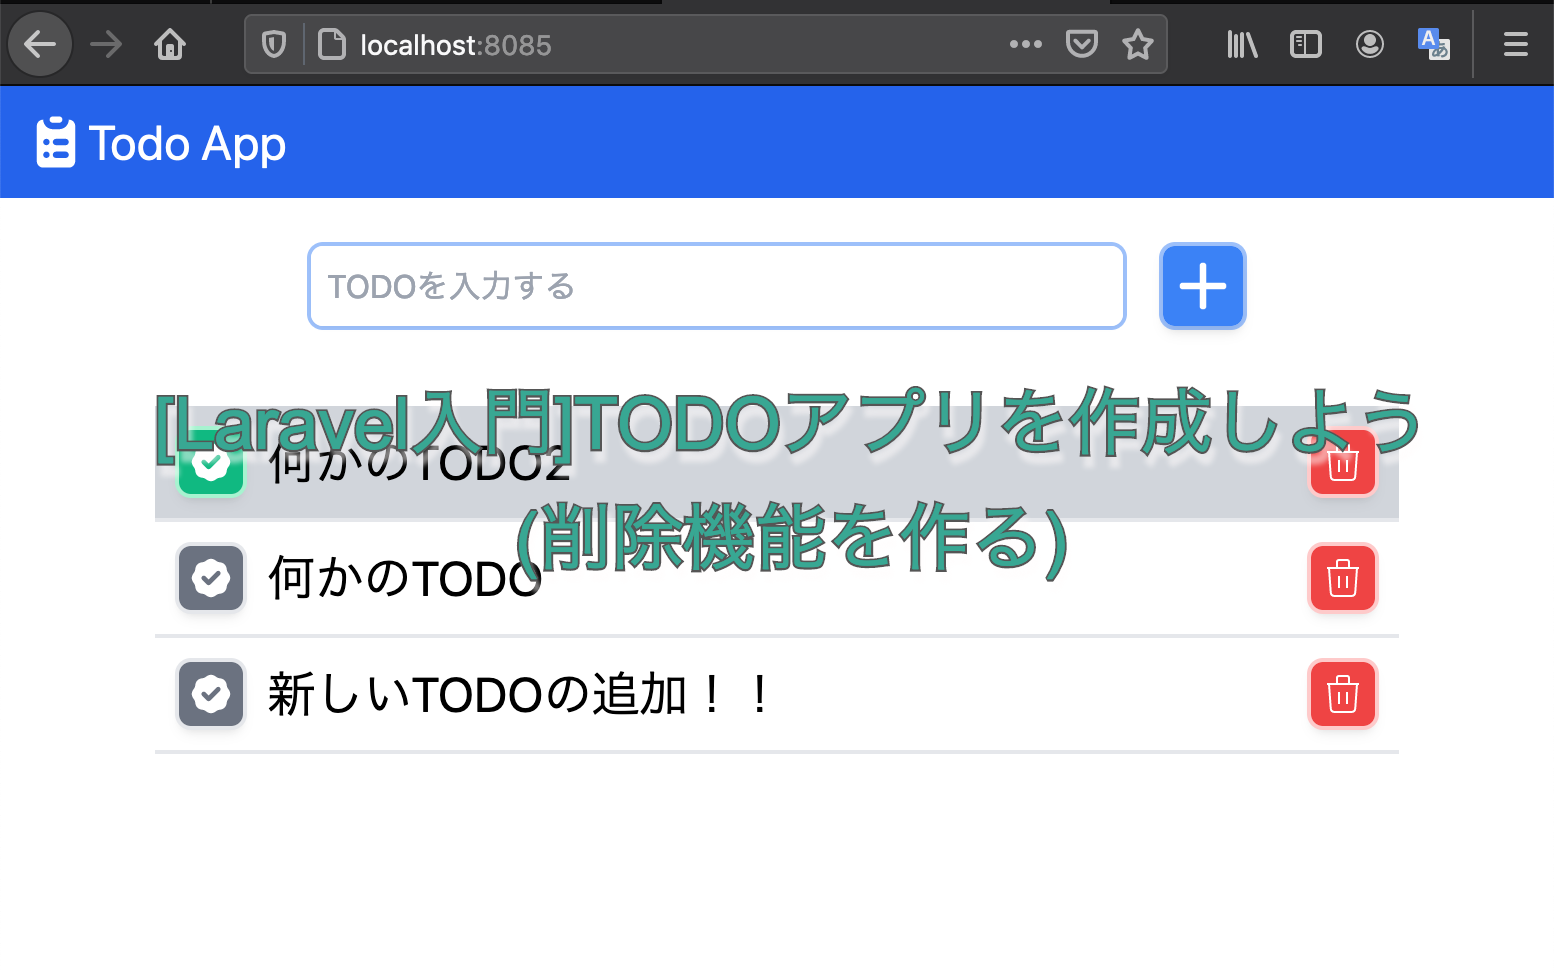 [Laravel入門]TODOアプリを作成しよう(削除機能を作る)